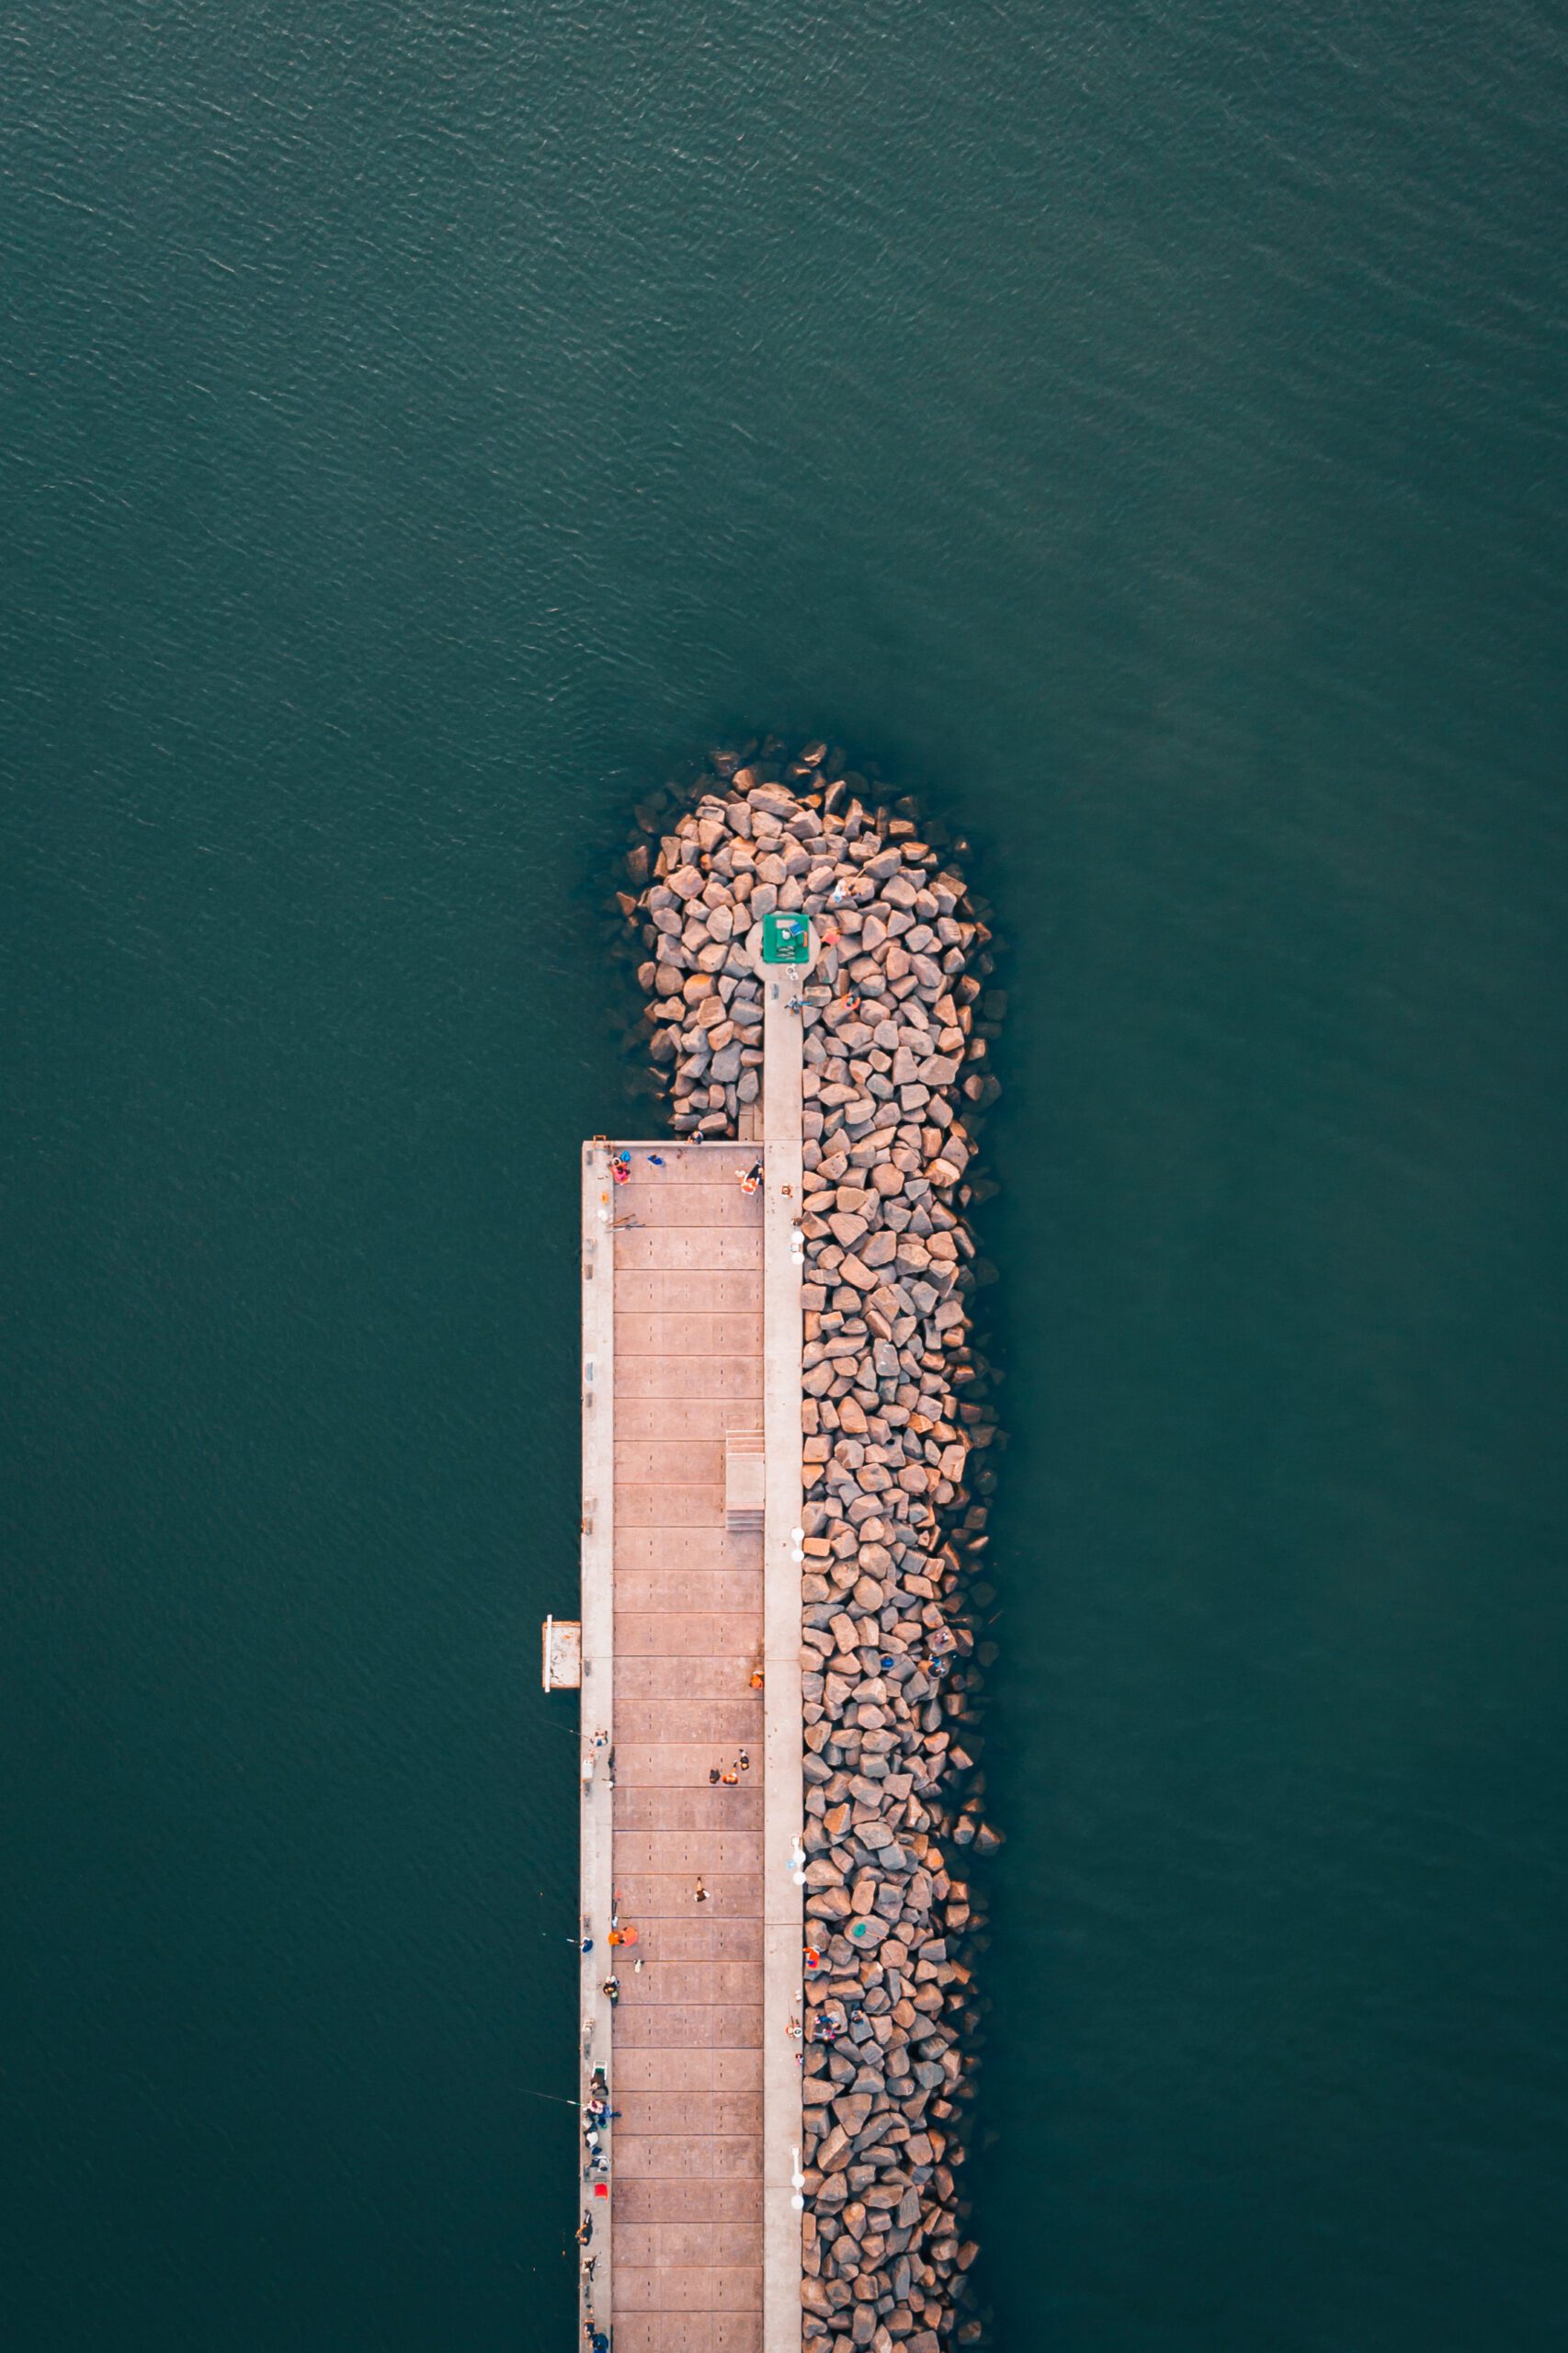 Puerto de Piriapolis | Accidentally Wes Anderson